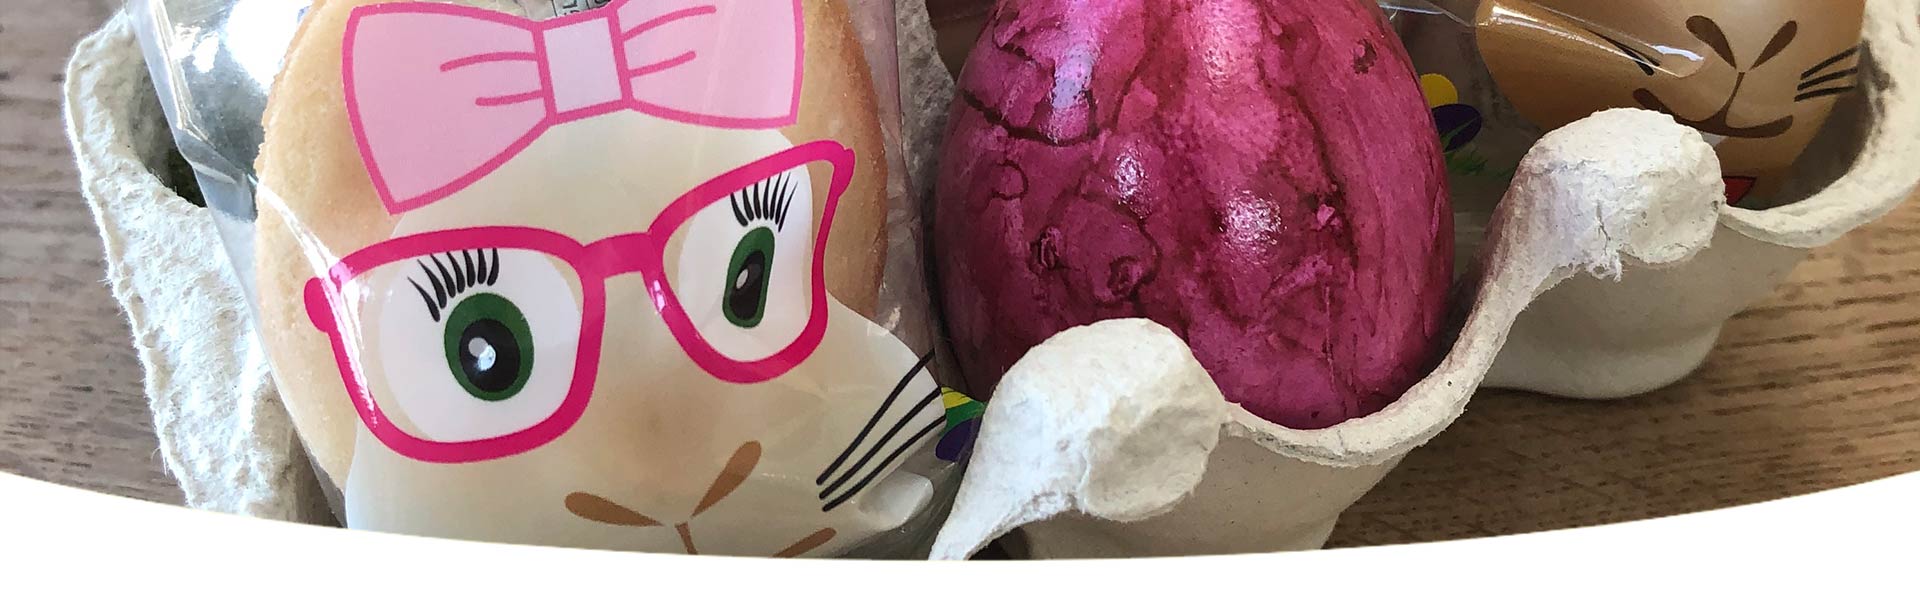 DIY Ostergeschenk Osterhasen-Glückskekse mit Osterei im Eierkarton